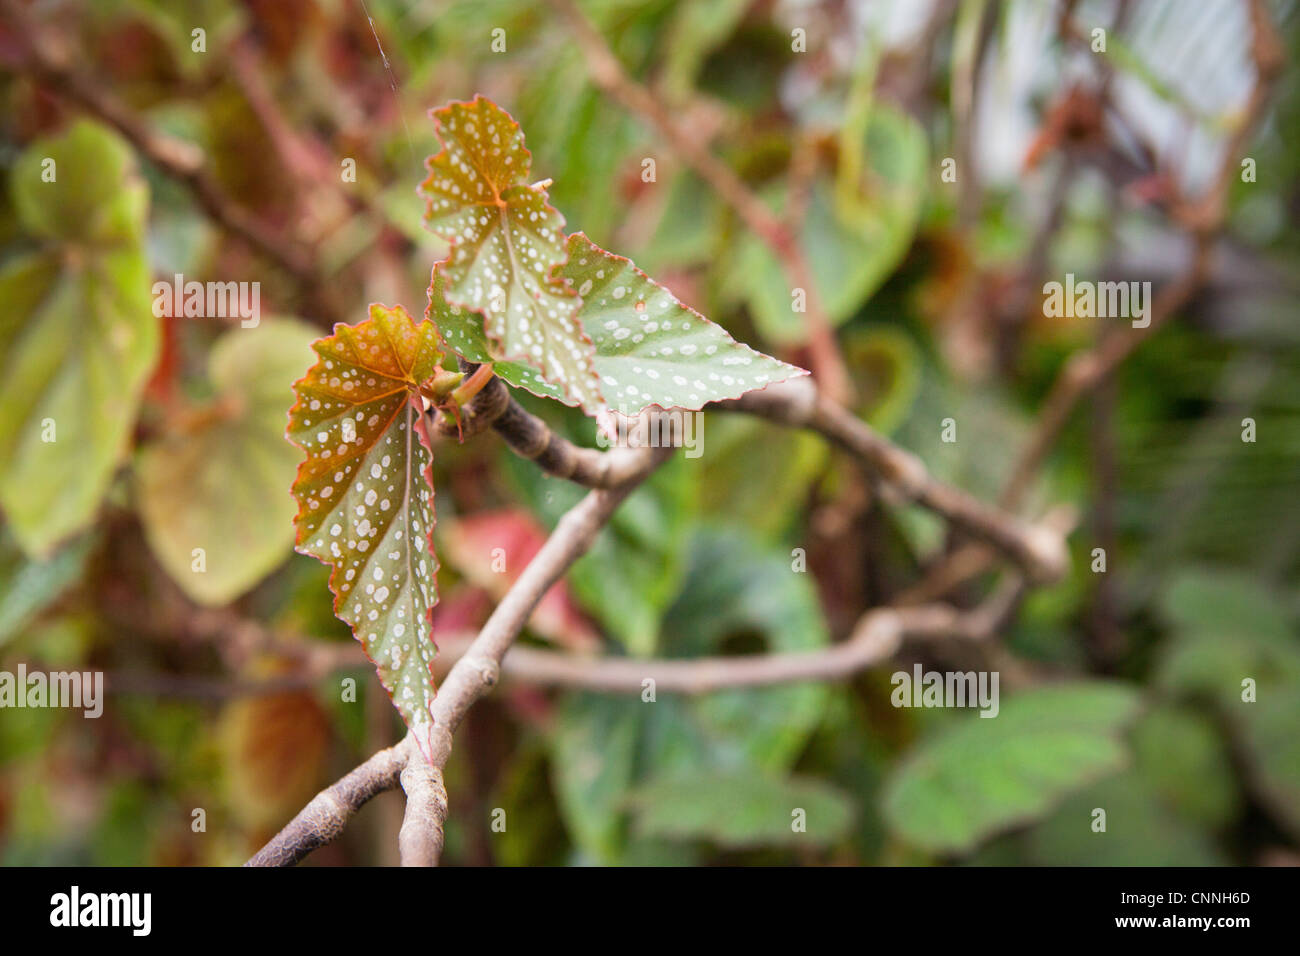 La canna da zucchero Begonia dettaglio foglia, close up Foto Stock